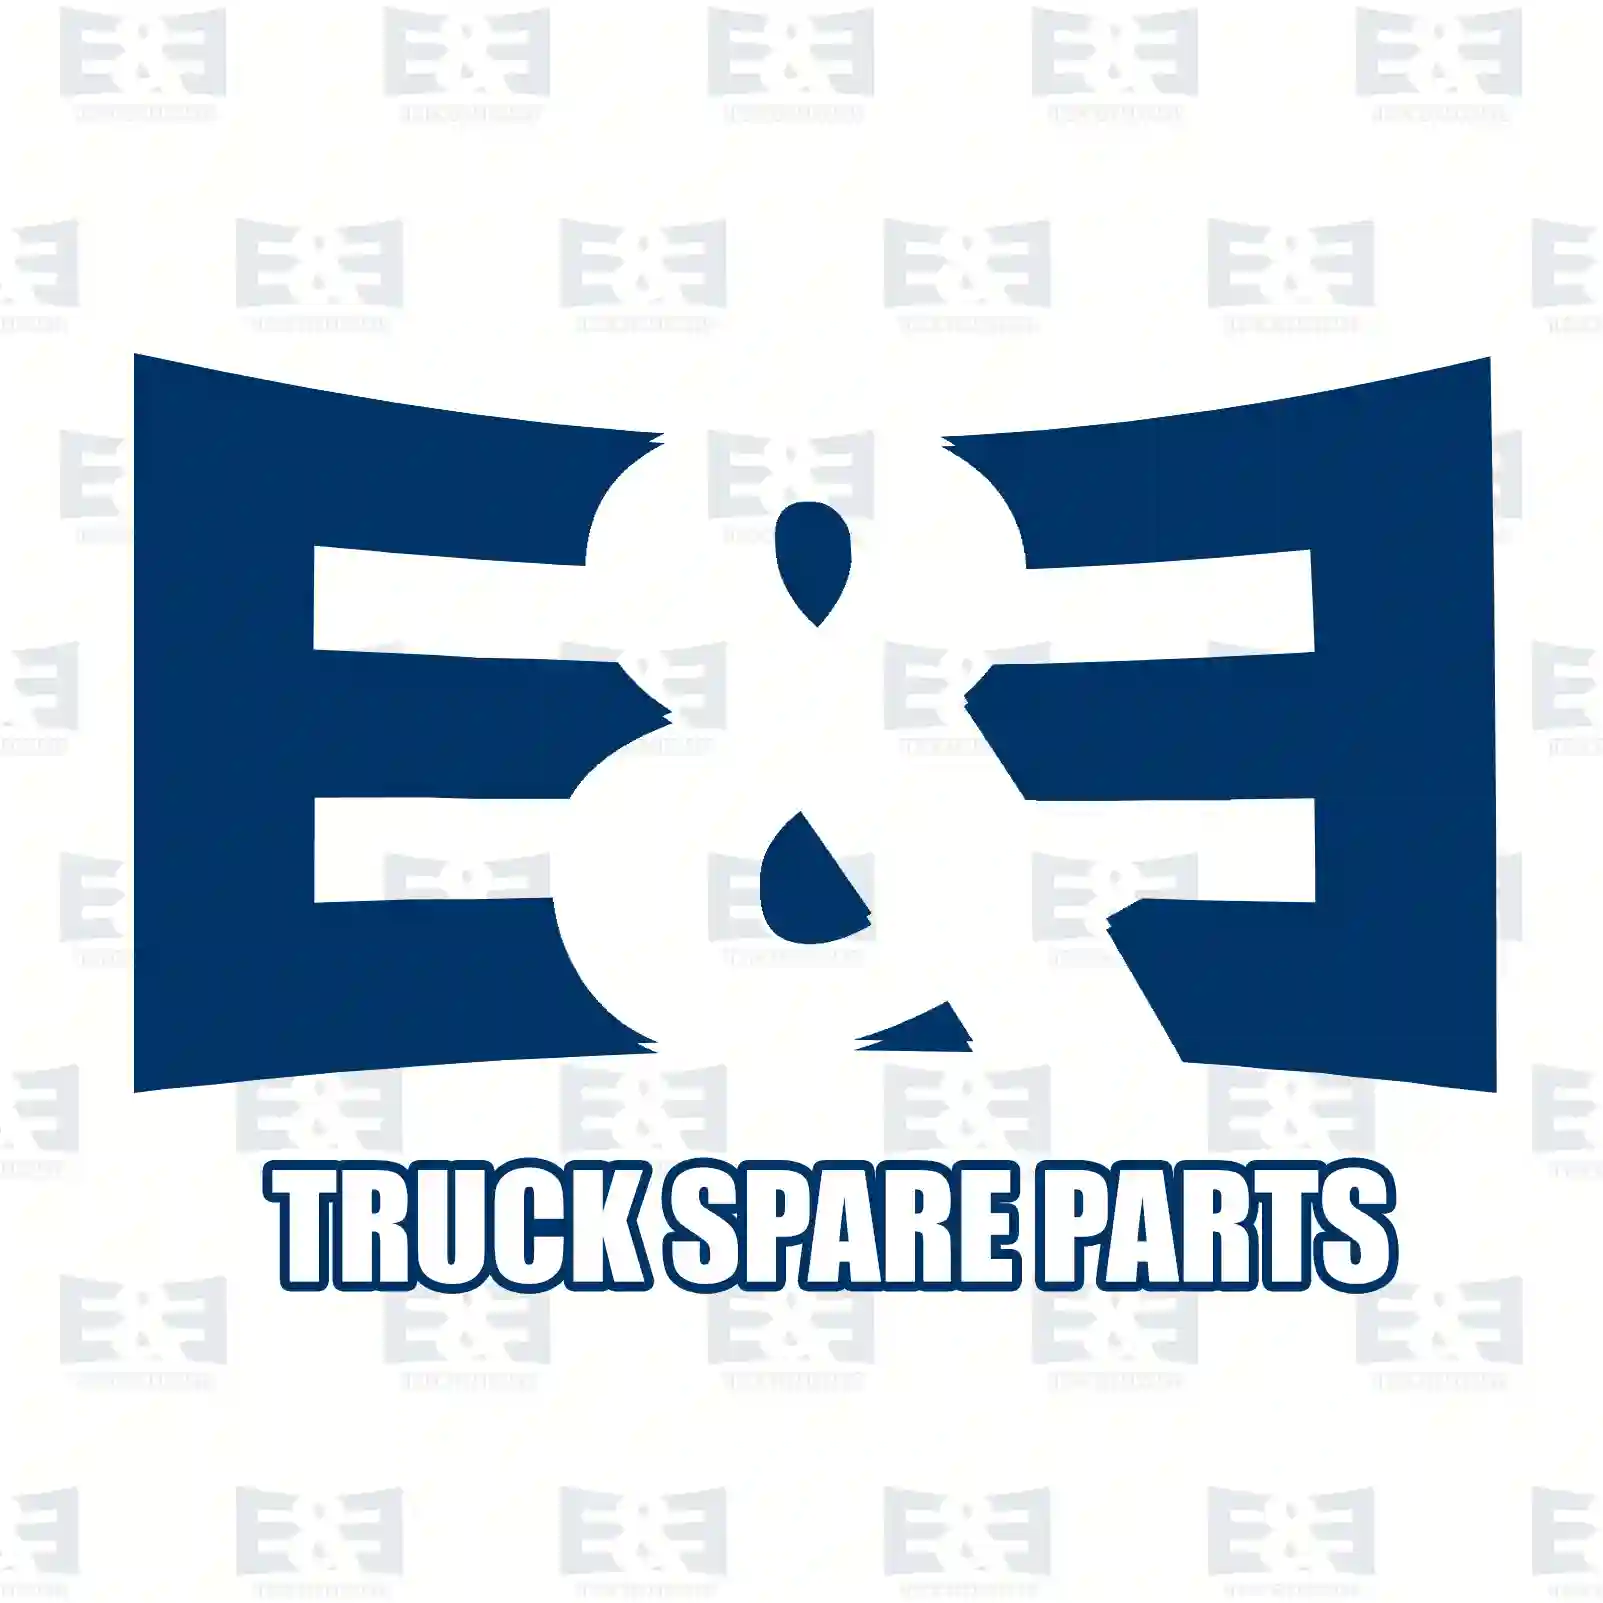 Exhaust brake, 2E2200926, 36156006002, 8115 ||  2E2200926 E&E Truck Spare Parts | Truck Spare Parts, Auotomotive Spare Parts Exhaust brake, 2E2200926, 36156006002, 8115 ||  2E2200926 E&E Truck Spare Parts | Truck Spare Parts, Auotomotive Spare Parts